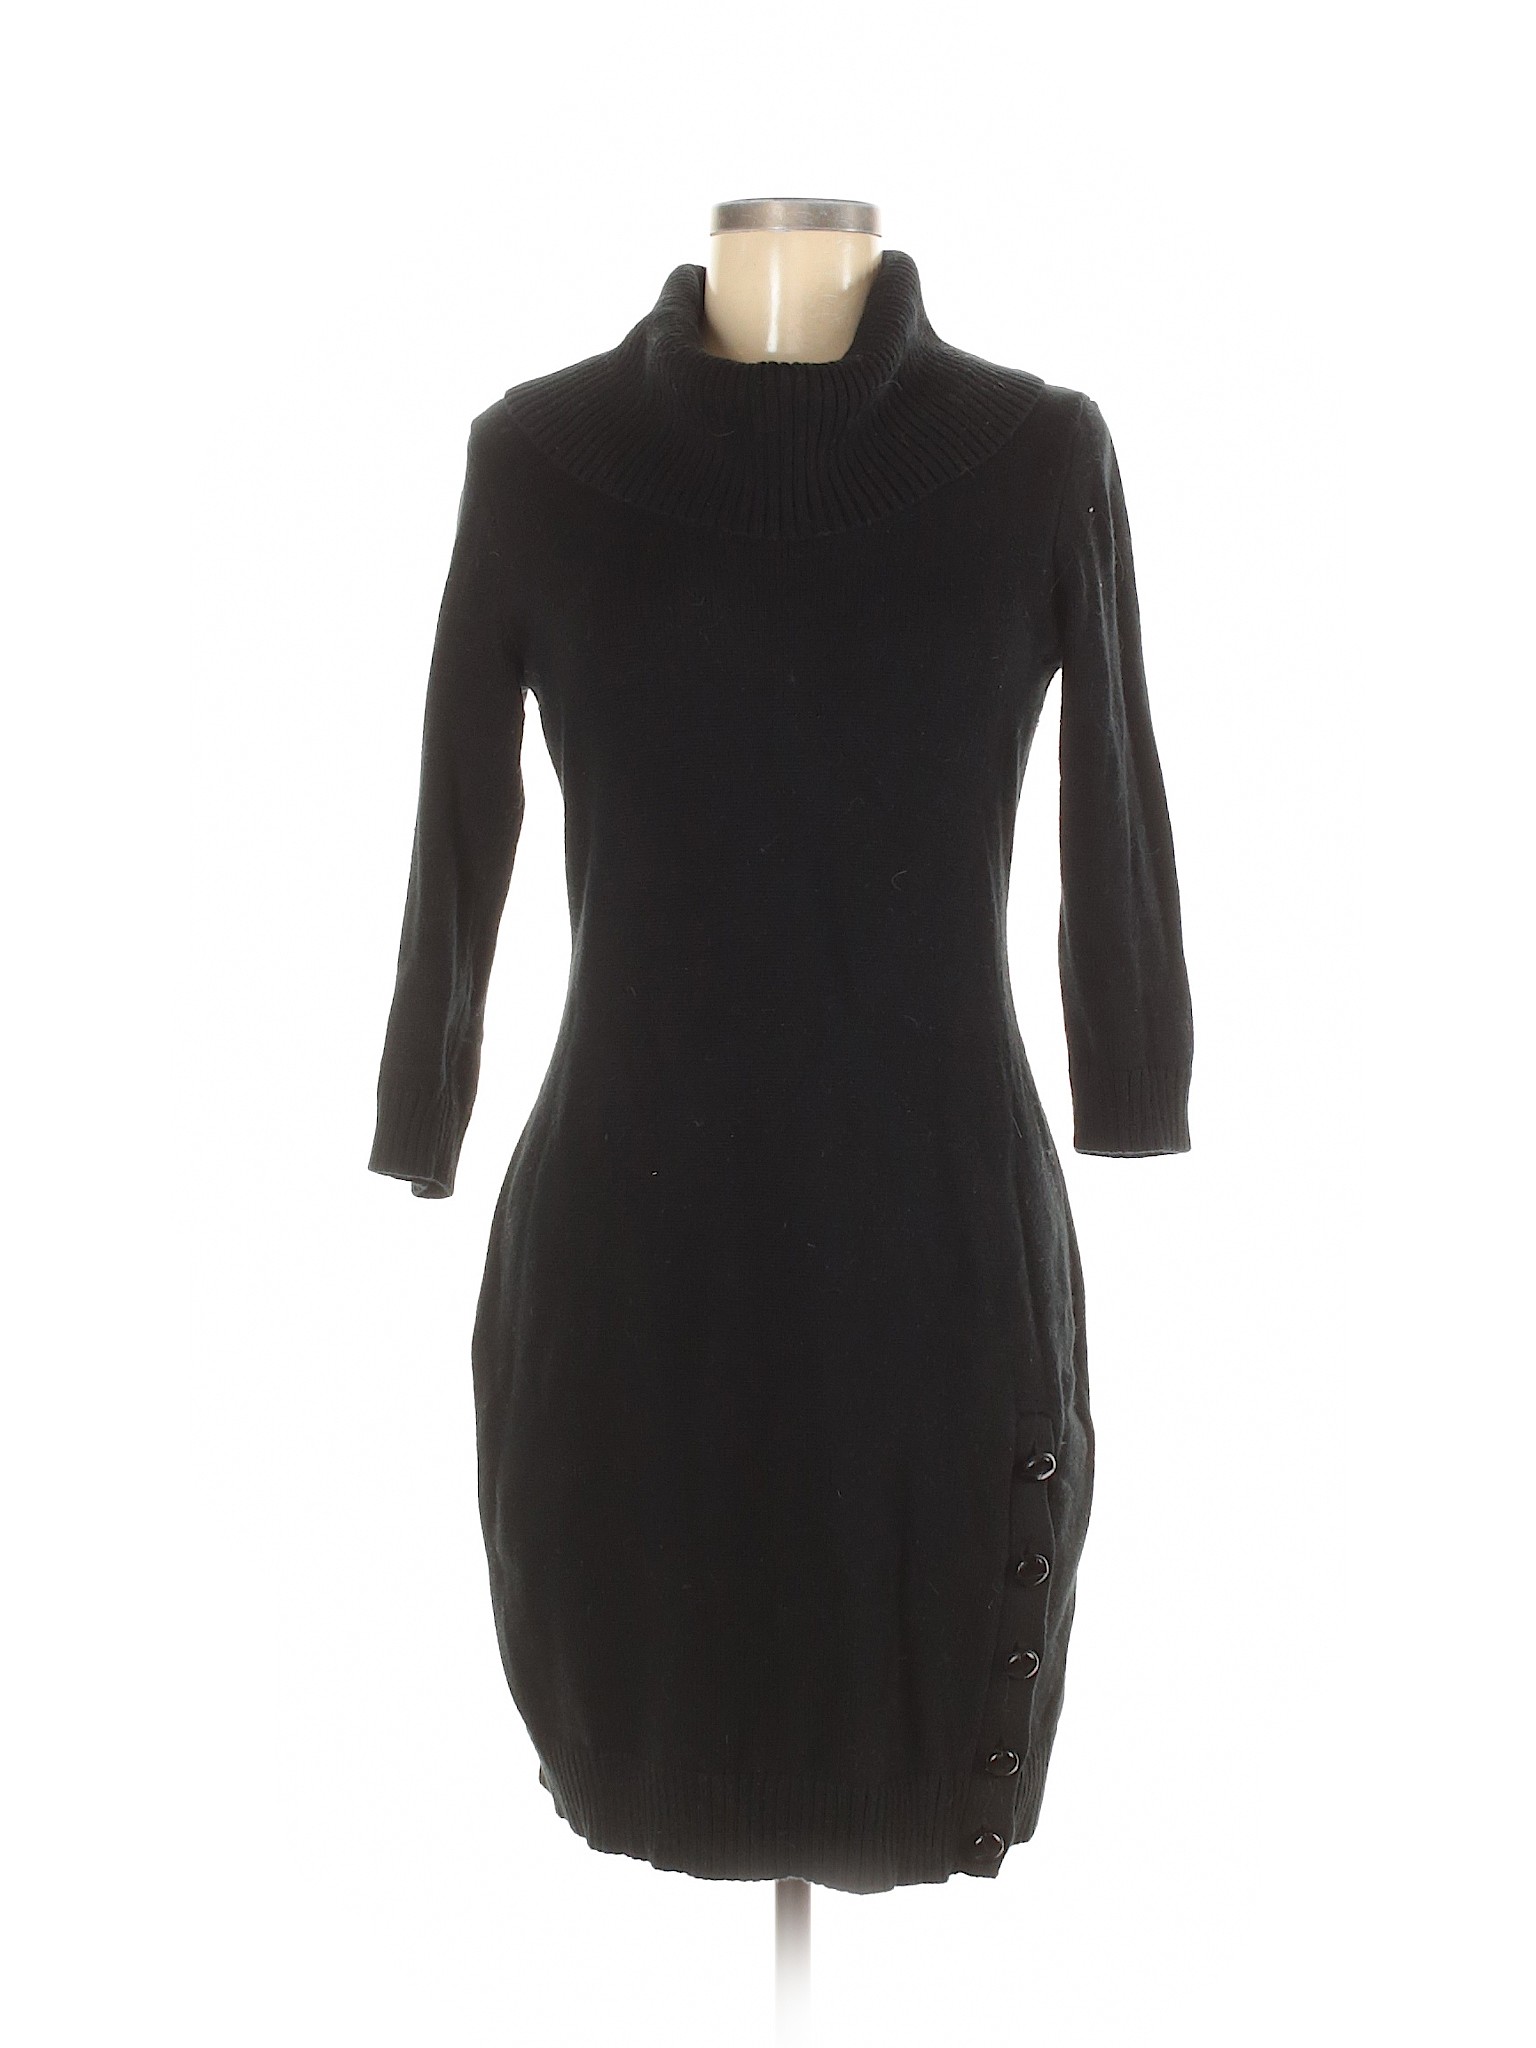 Lauren by Ralph Lauren Women Black Casual Dress M | eBay